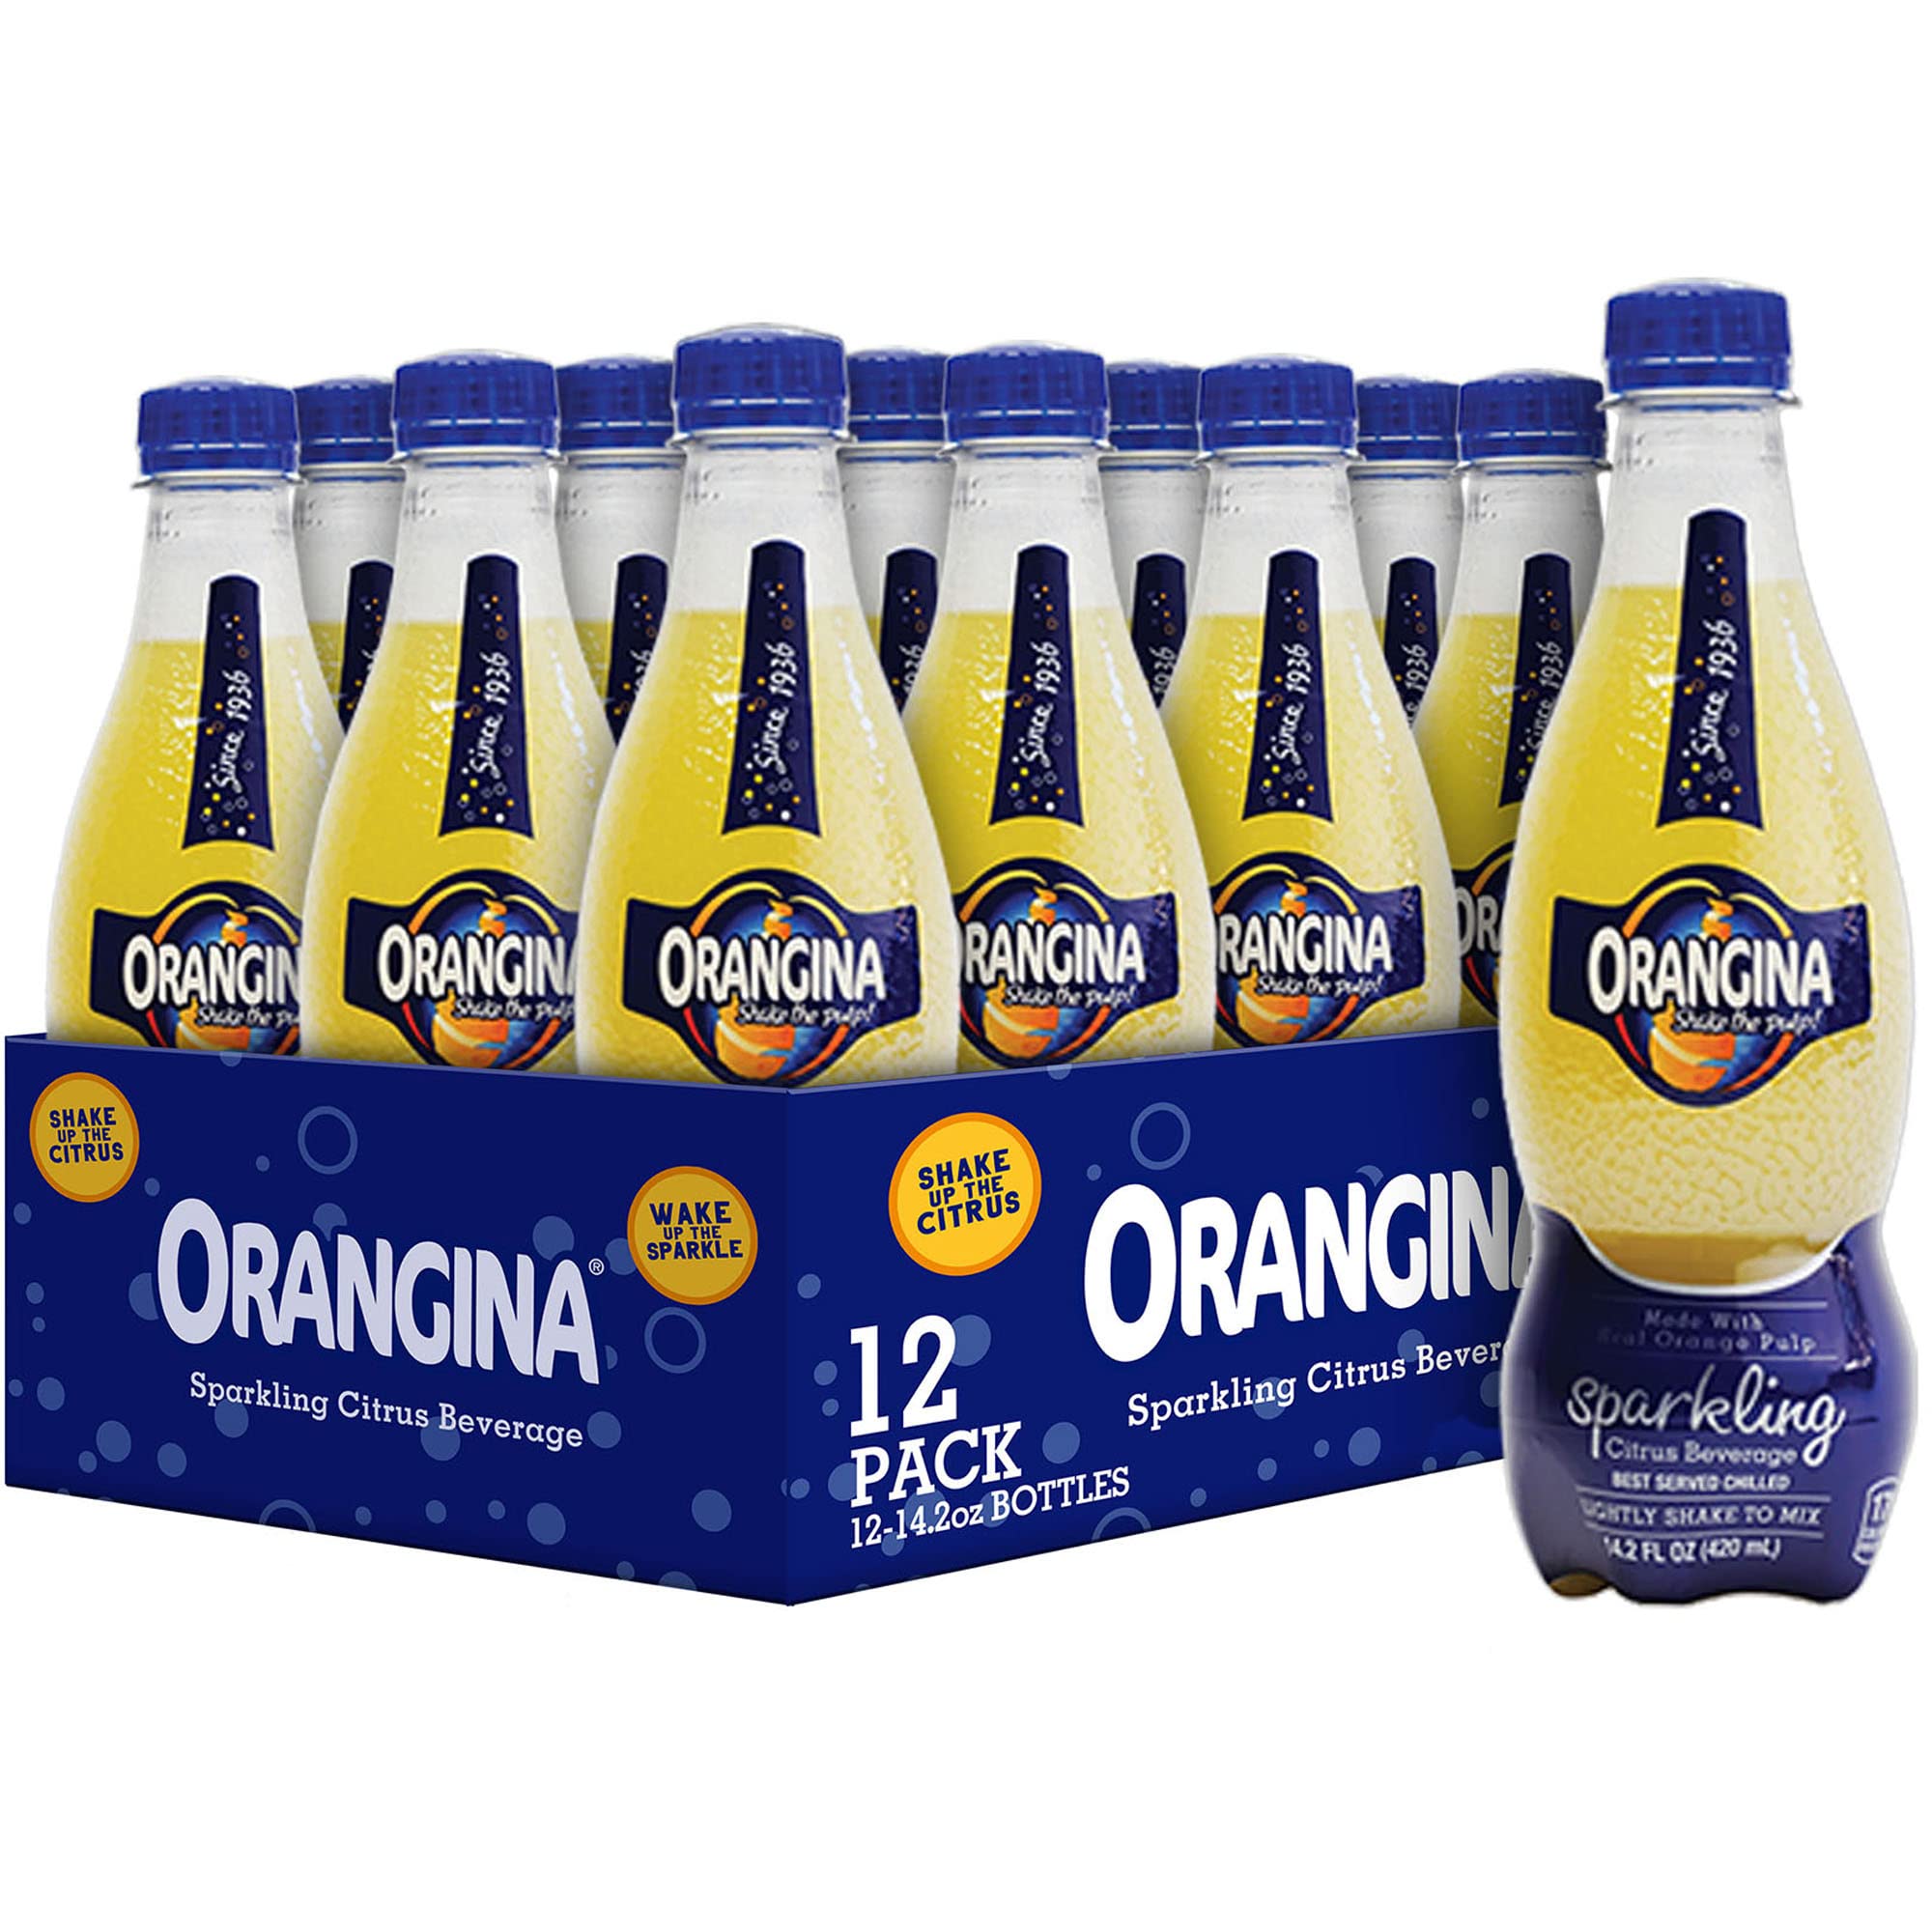 Orangina - Orangina, Sparkling Citrus Beverage, with Natural Pulp